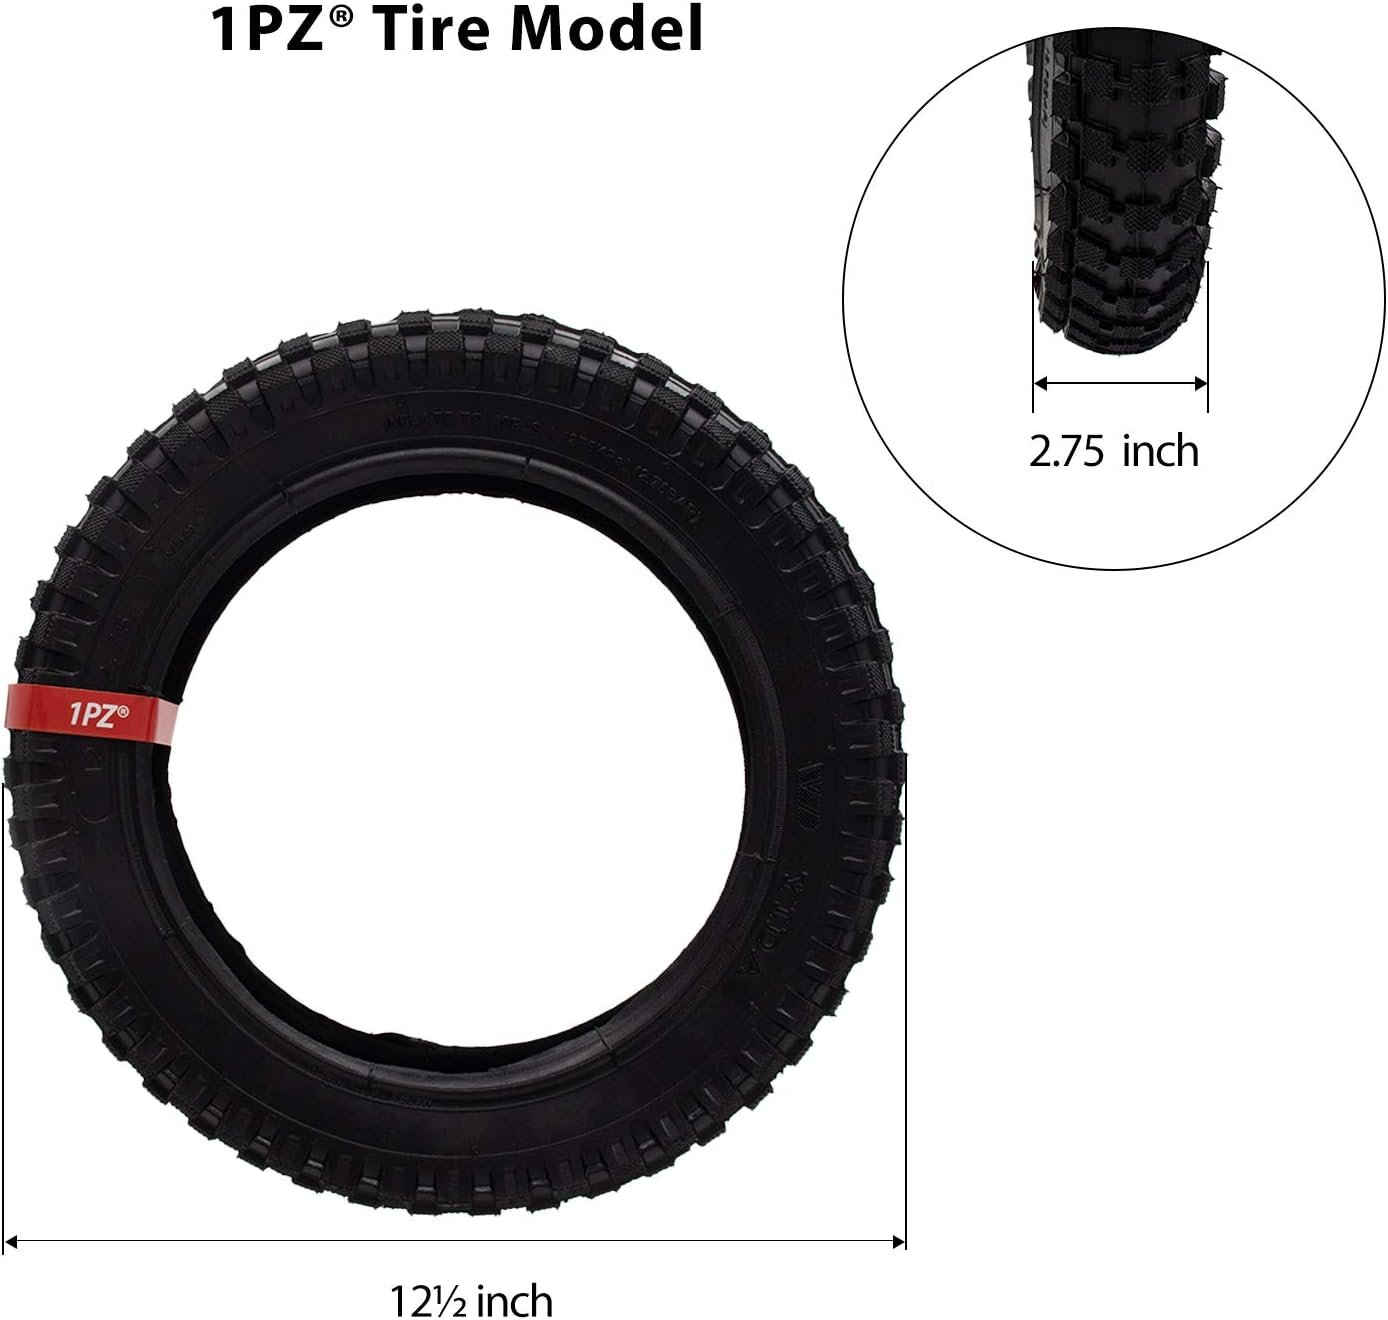 1PZ MX3-T12 Tire & Inner Tube Review